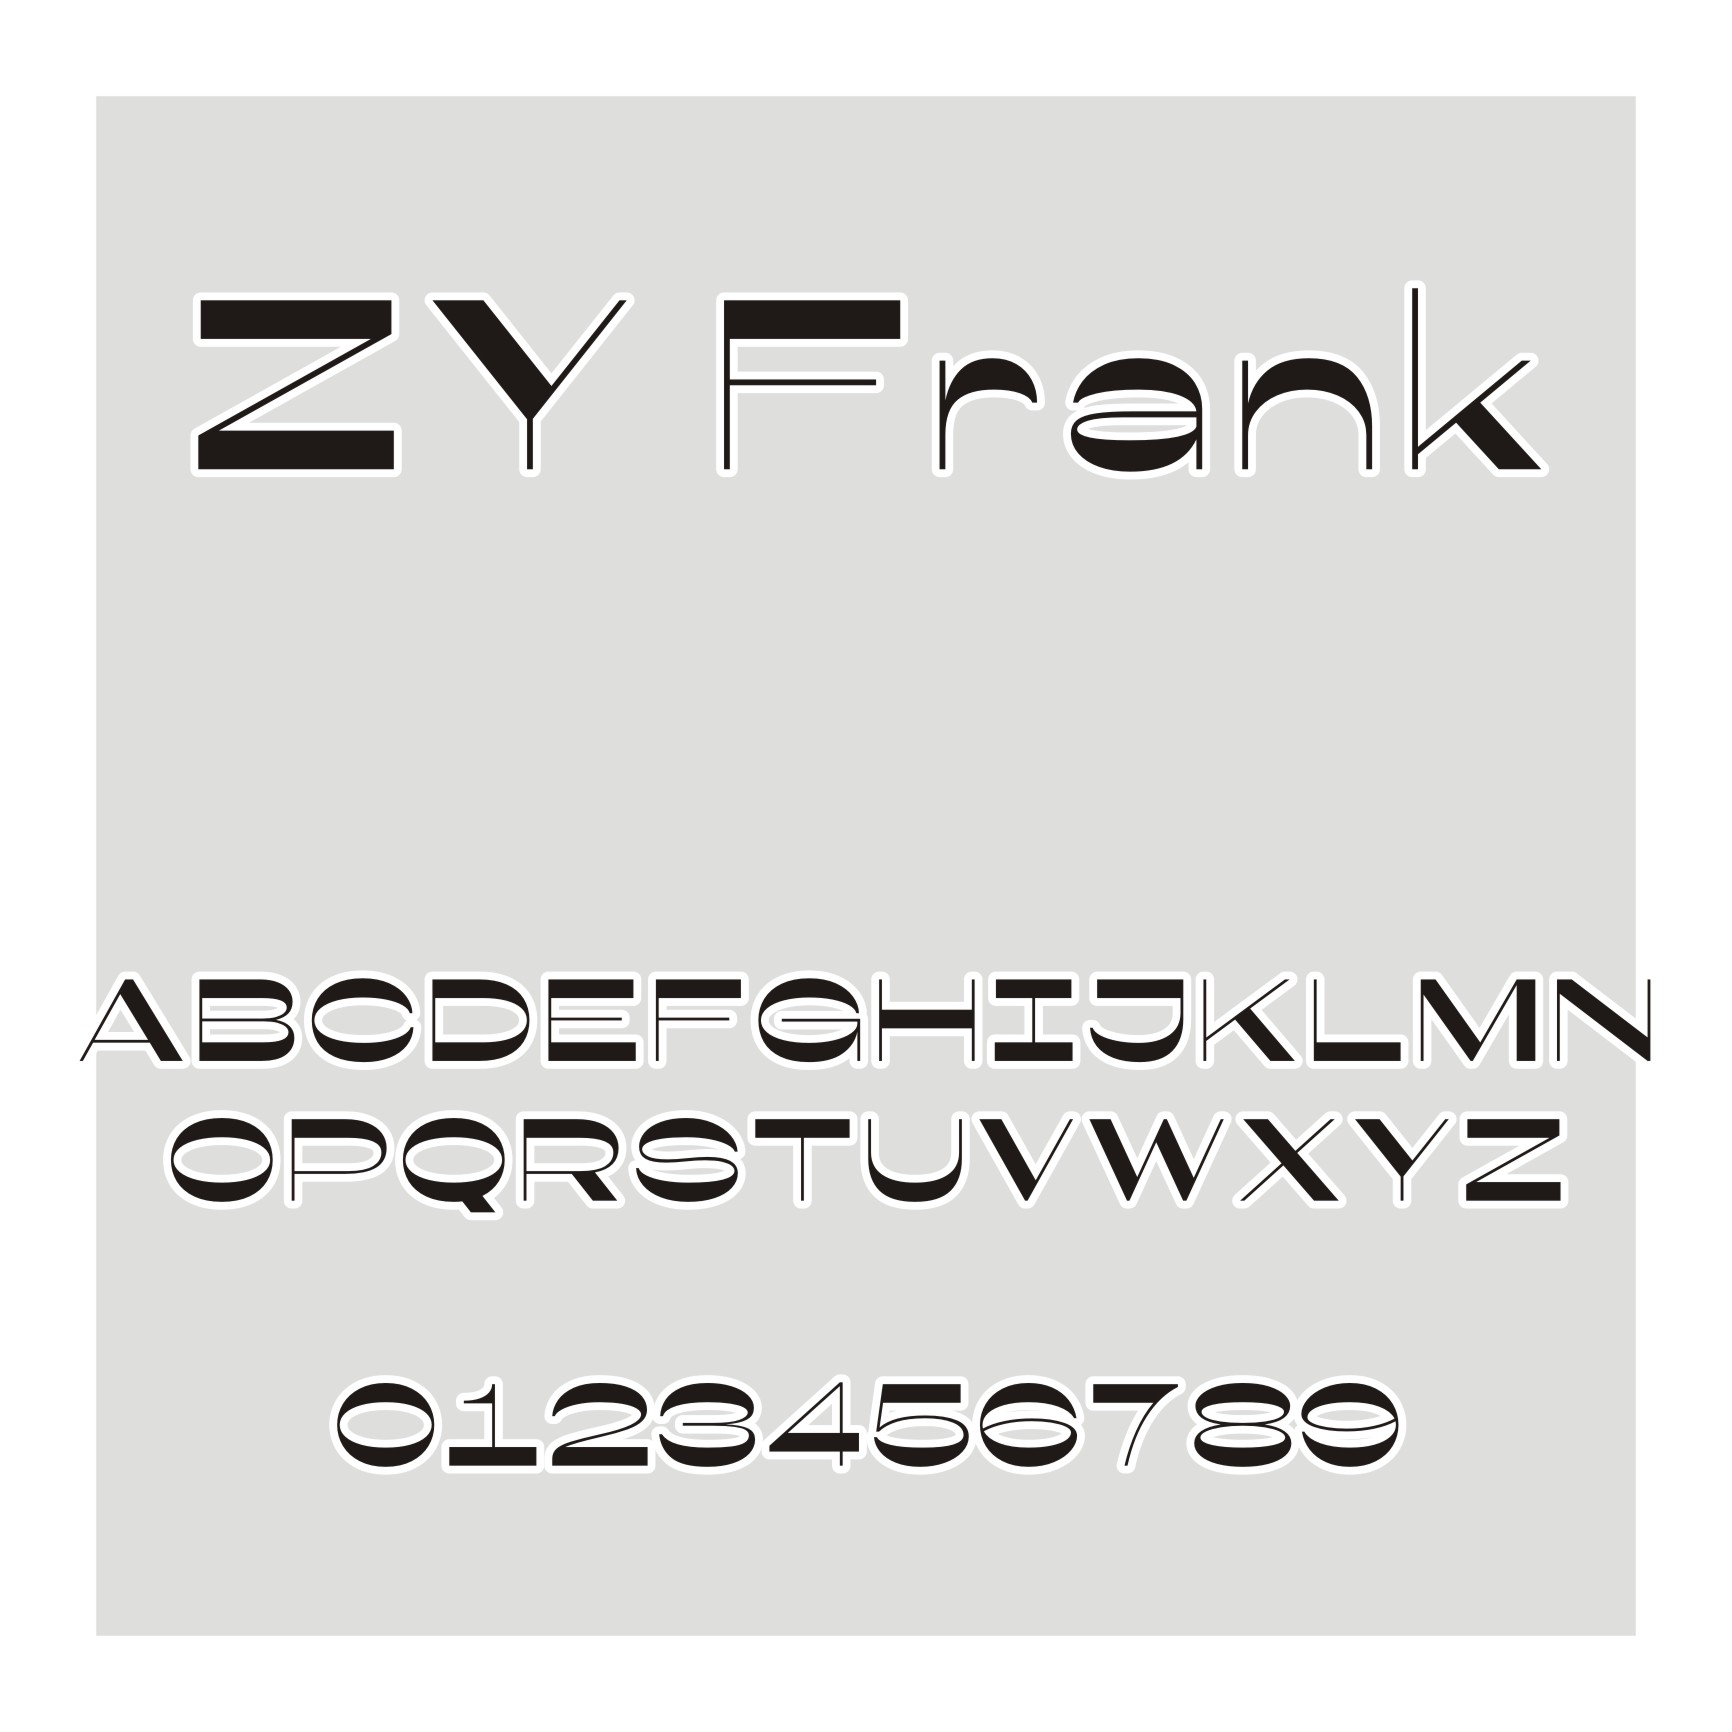 ZY Frank